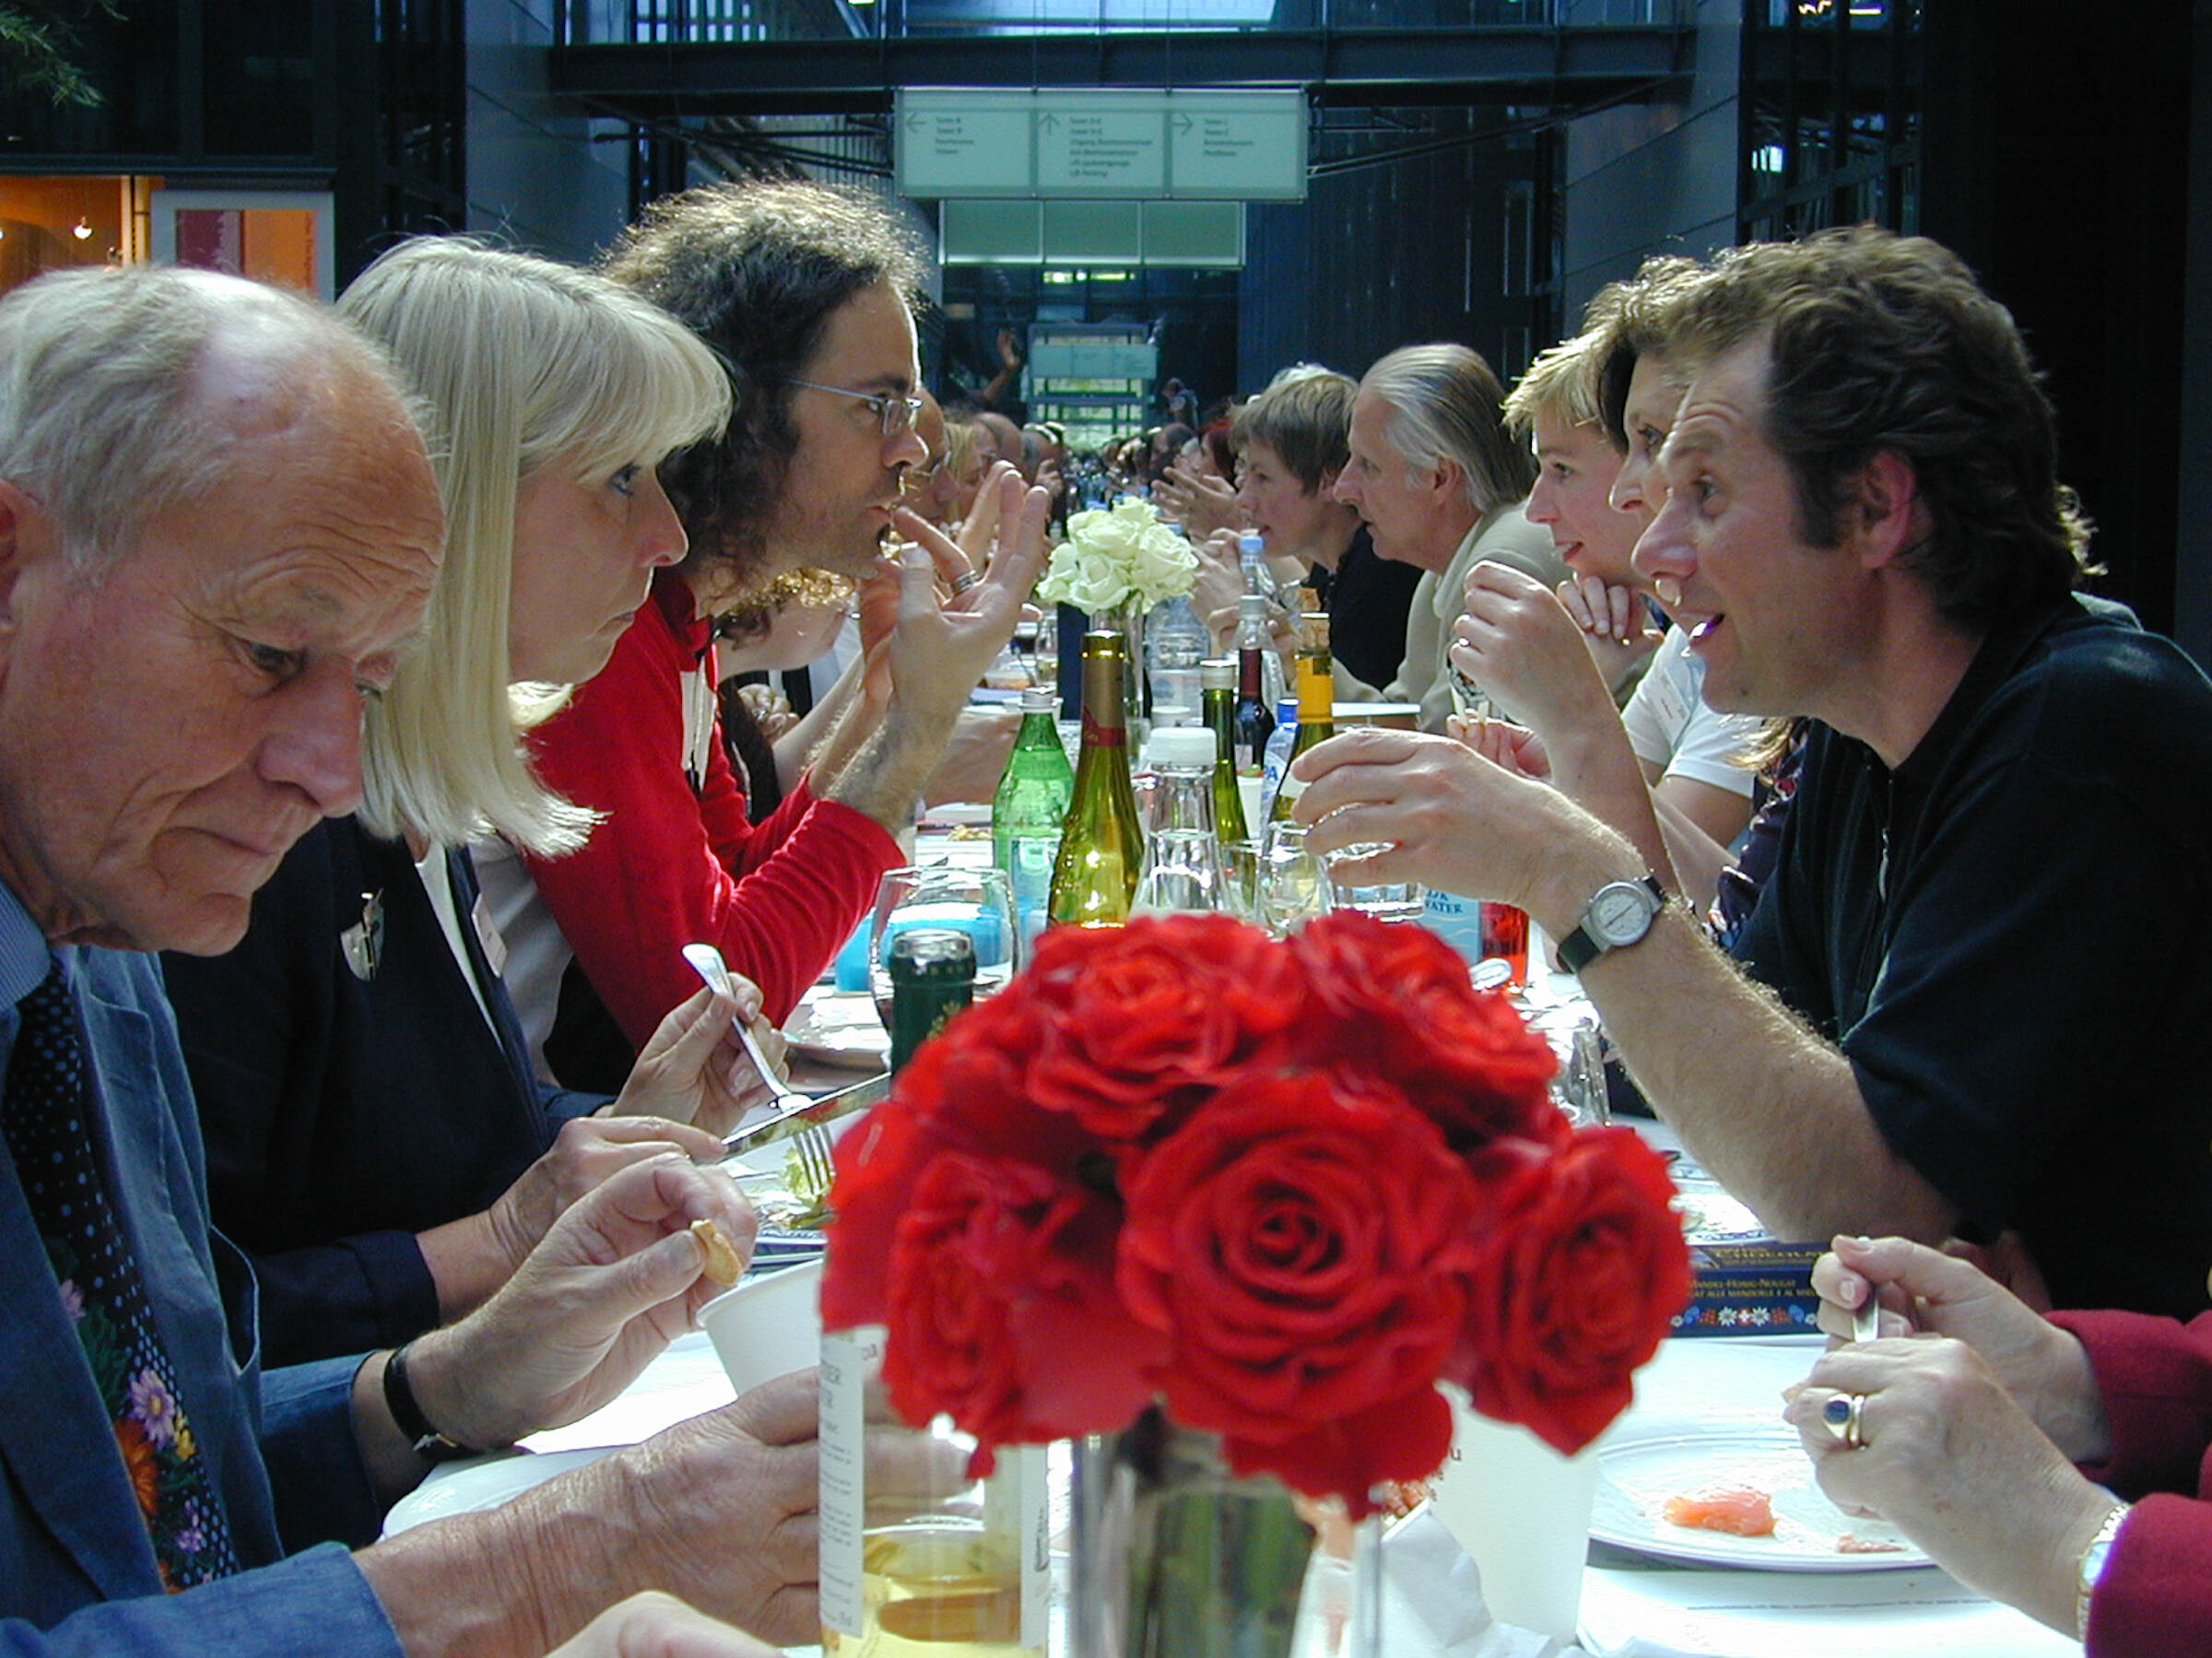 Max Bottini: Tischgespräch in Amsterdam aus Anlass des Schweizer Staatsbesuchs, 2004